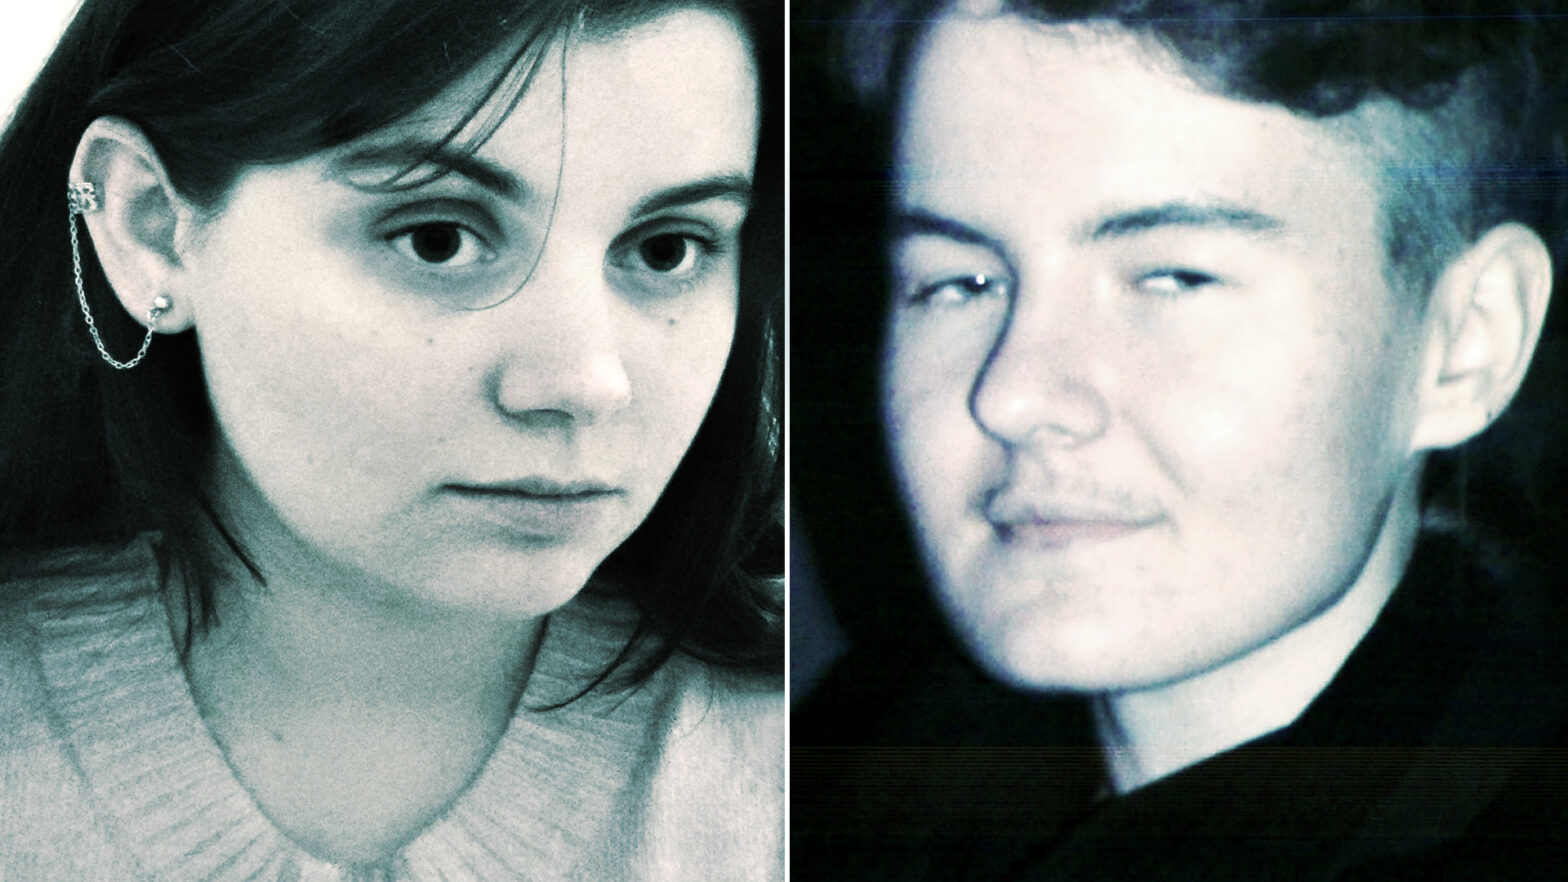 Czarno-białe portrety Julii Sieczkowskiej i Marcela Boguszewskiego. Kobieta po lewej stronie ujęta jest z prawego półprofilu, mężczyzna po prawej z lewego półprofilu. Oboje spoglądają w przestrzeń i są lekko uśmiechnięci.